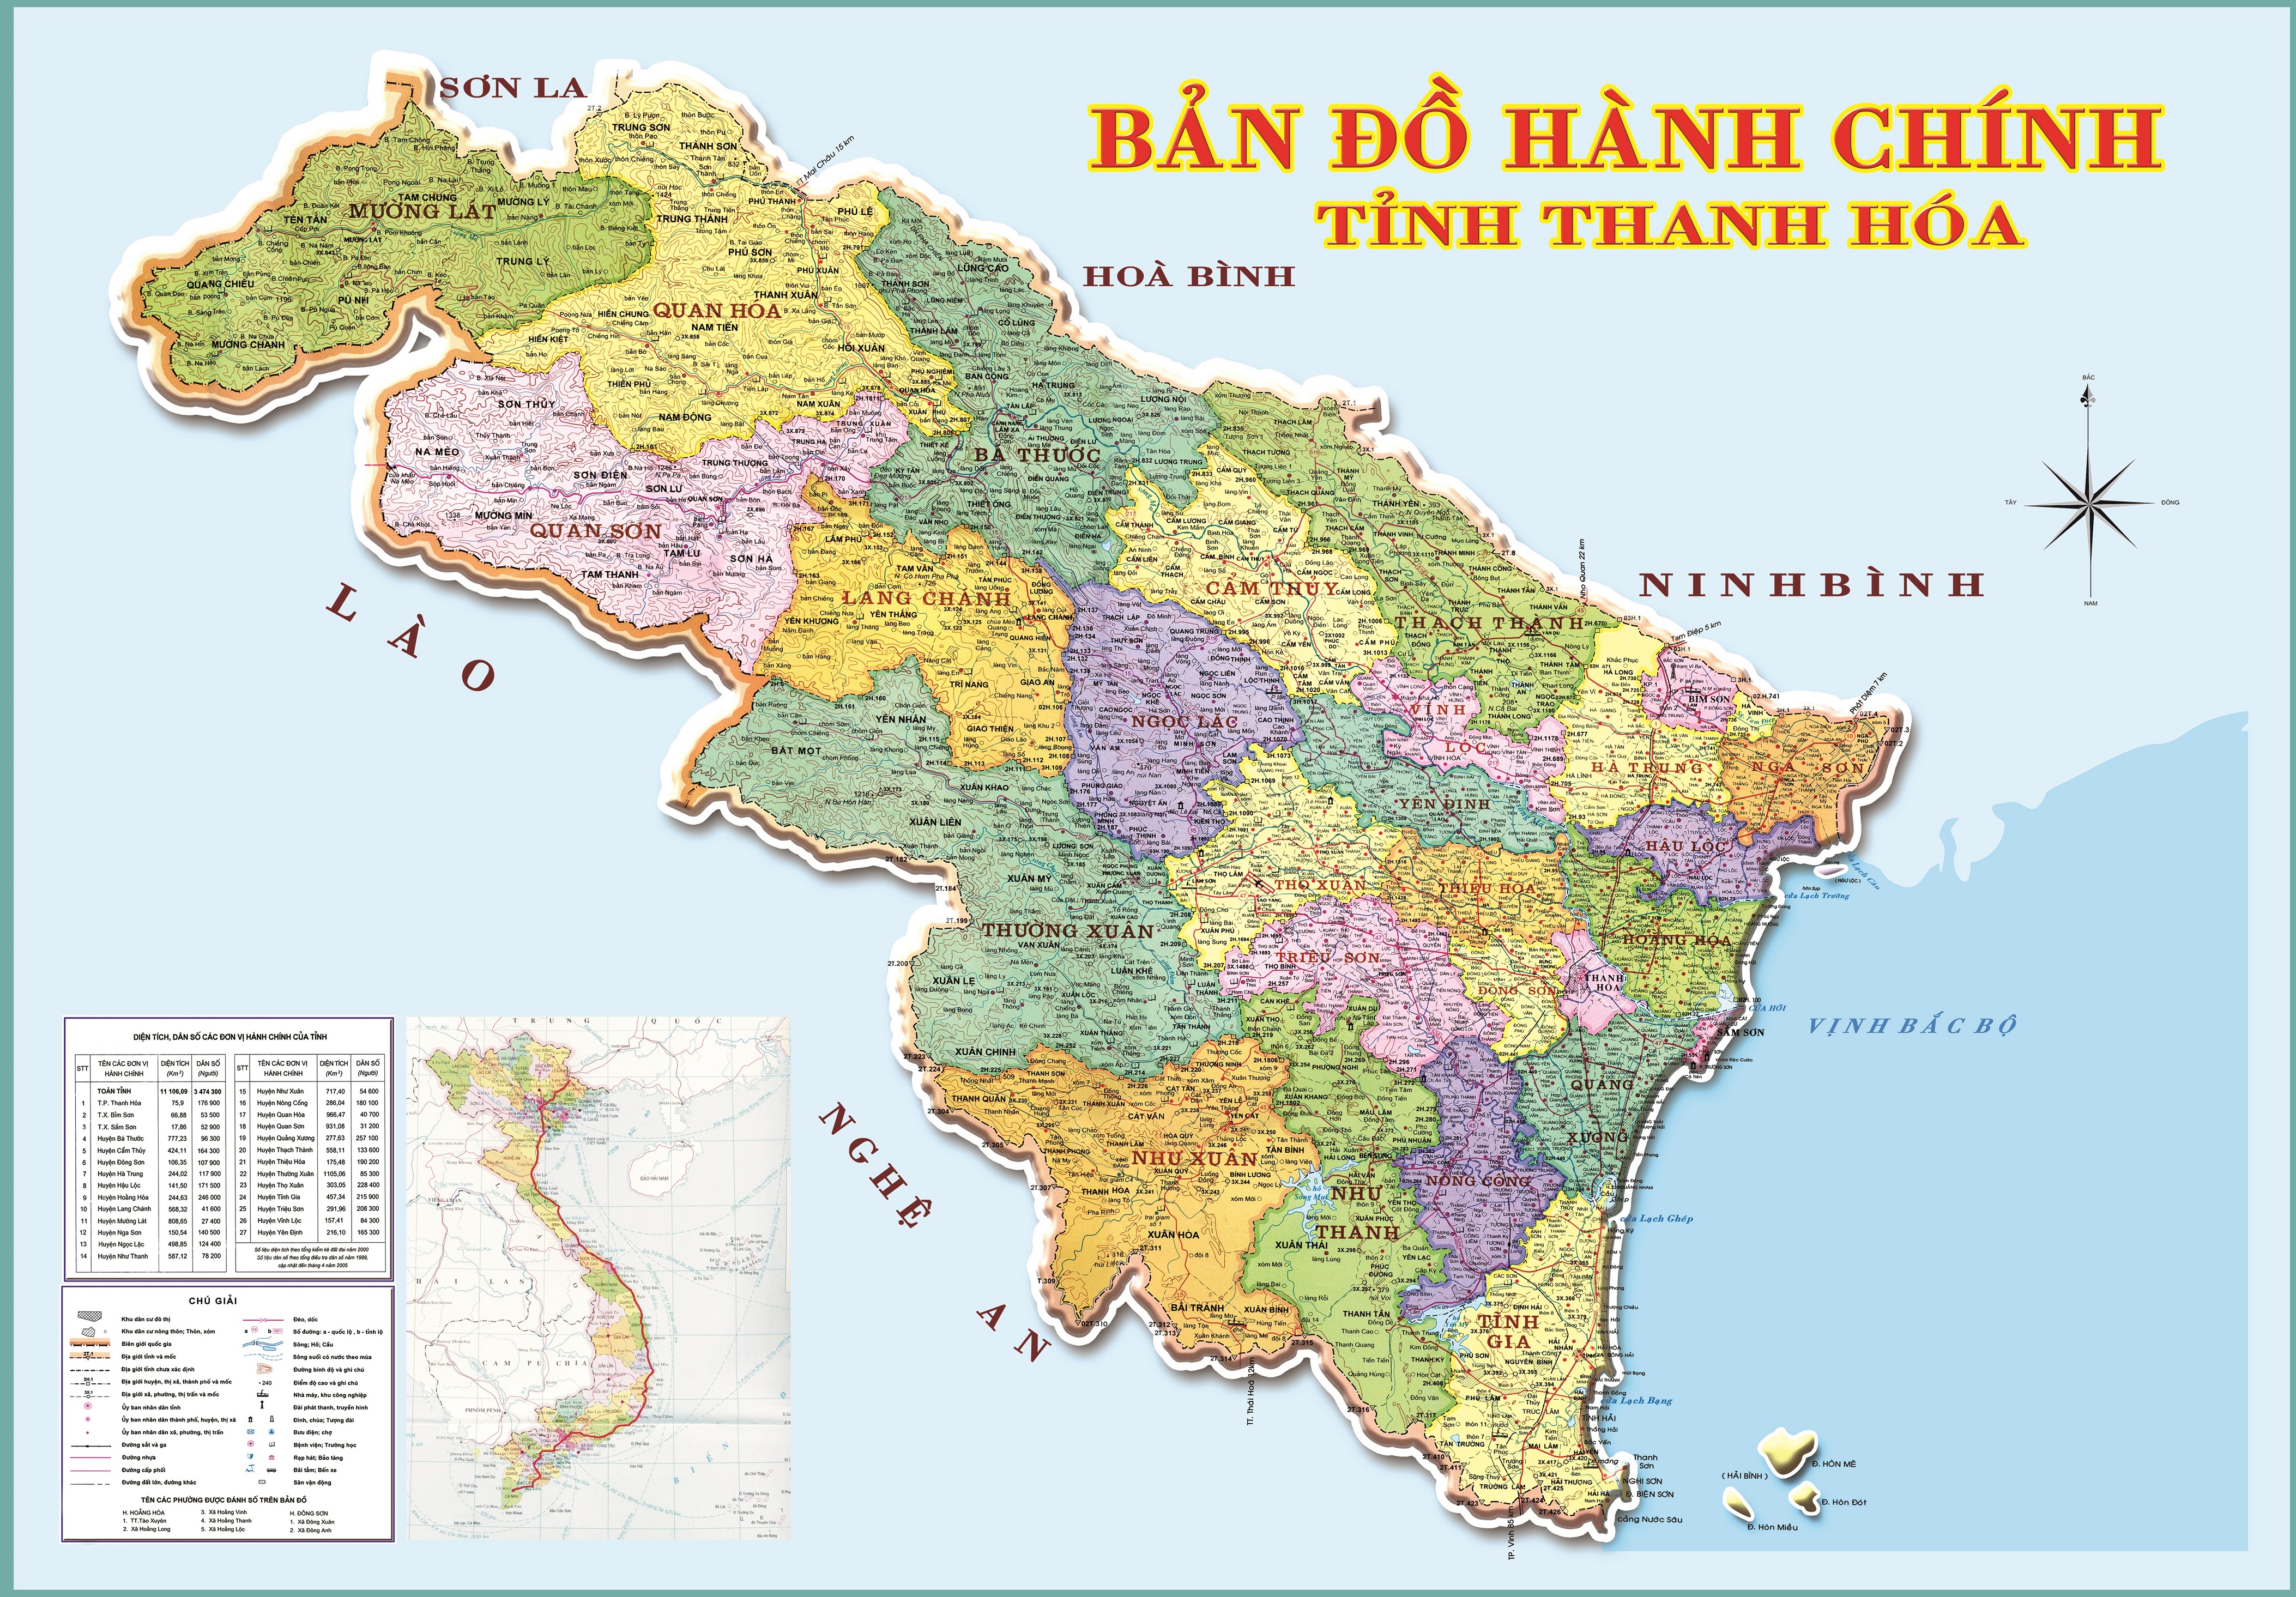 Bản đồ hành chính tỉnh Thanh Hoá 2024: Thanh Hoá - một trong những tỉnh lớn nhất của Việt Nam đang tiếp tục phát triển mạnh mẽ và tăng trưởng. Với bản đồ hành chính 2024, bạn có thể theo dõi các dự án phát triển mới của tỉnh và các cơ hội đầu tư đang mở ra.